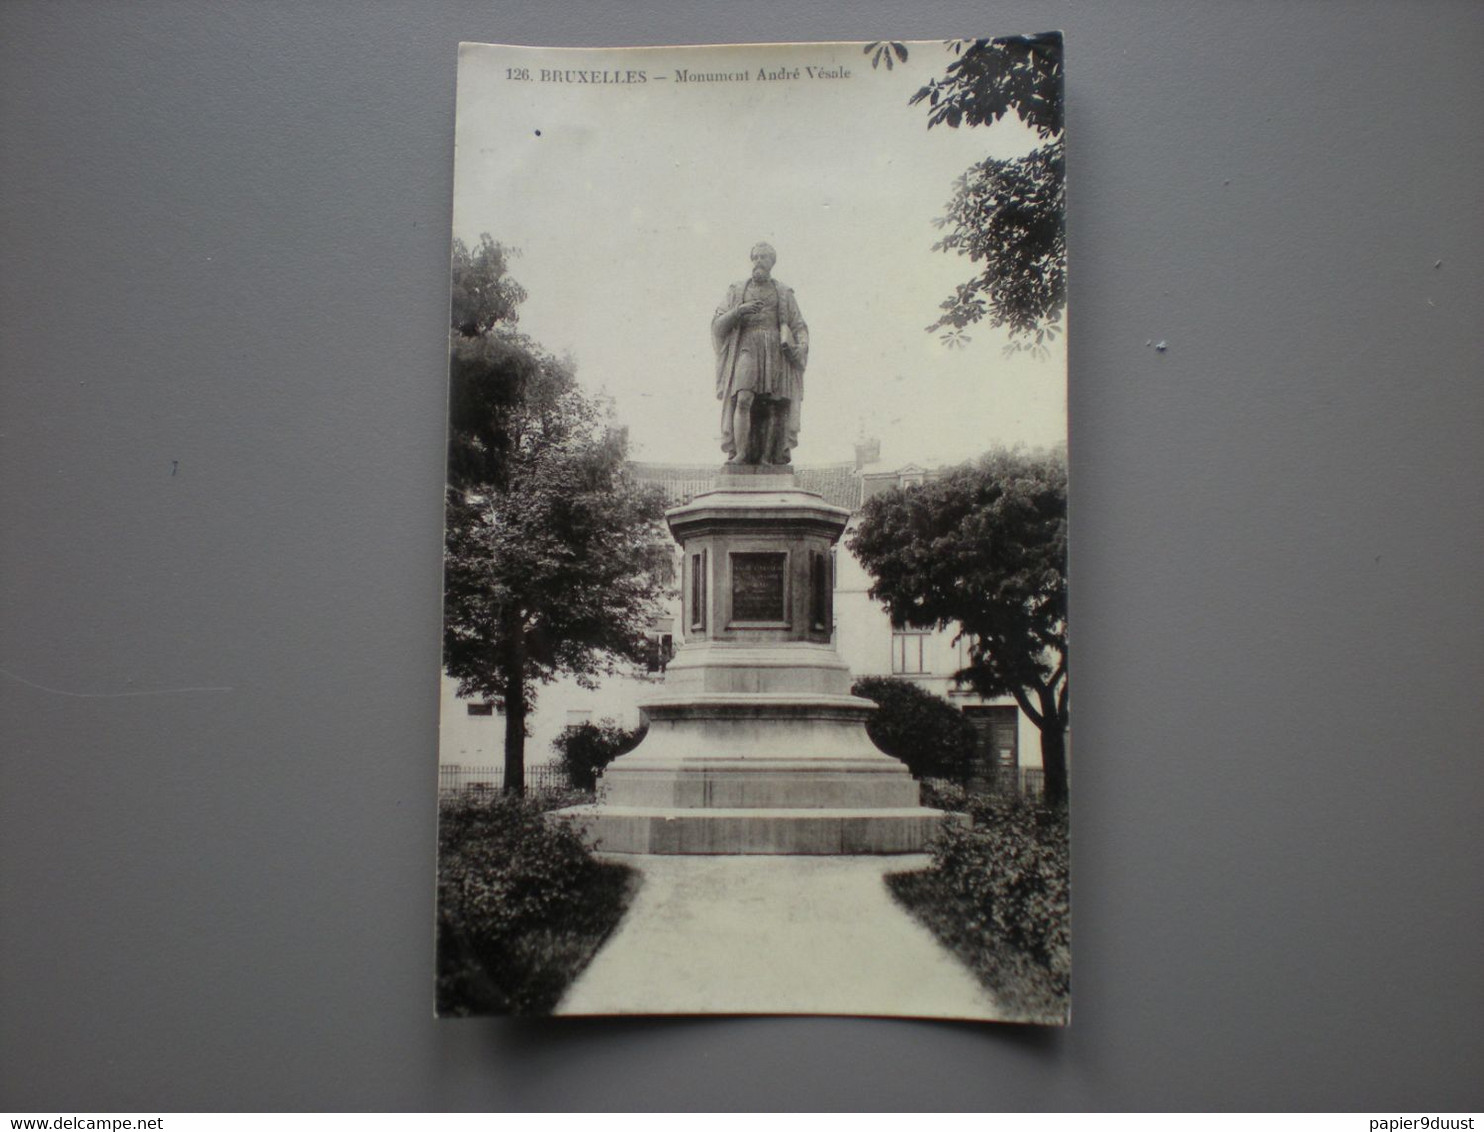 BRUXELLES - MONUMENT ANDRE VESALE - ED. GRAND BAZAR ANSPACH N° 126 - CARTE PHOTO - Unclassified